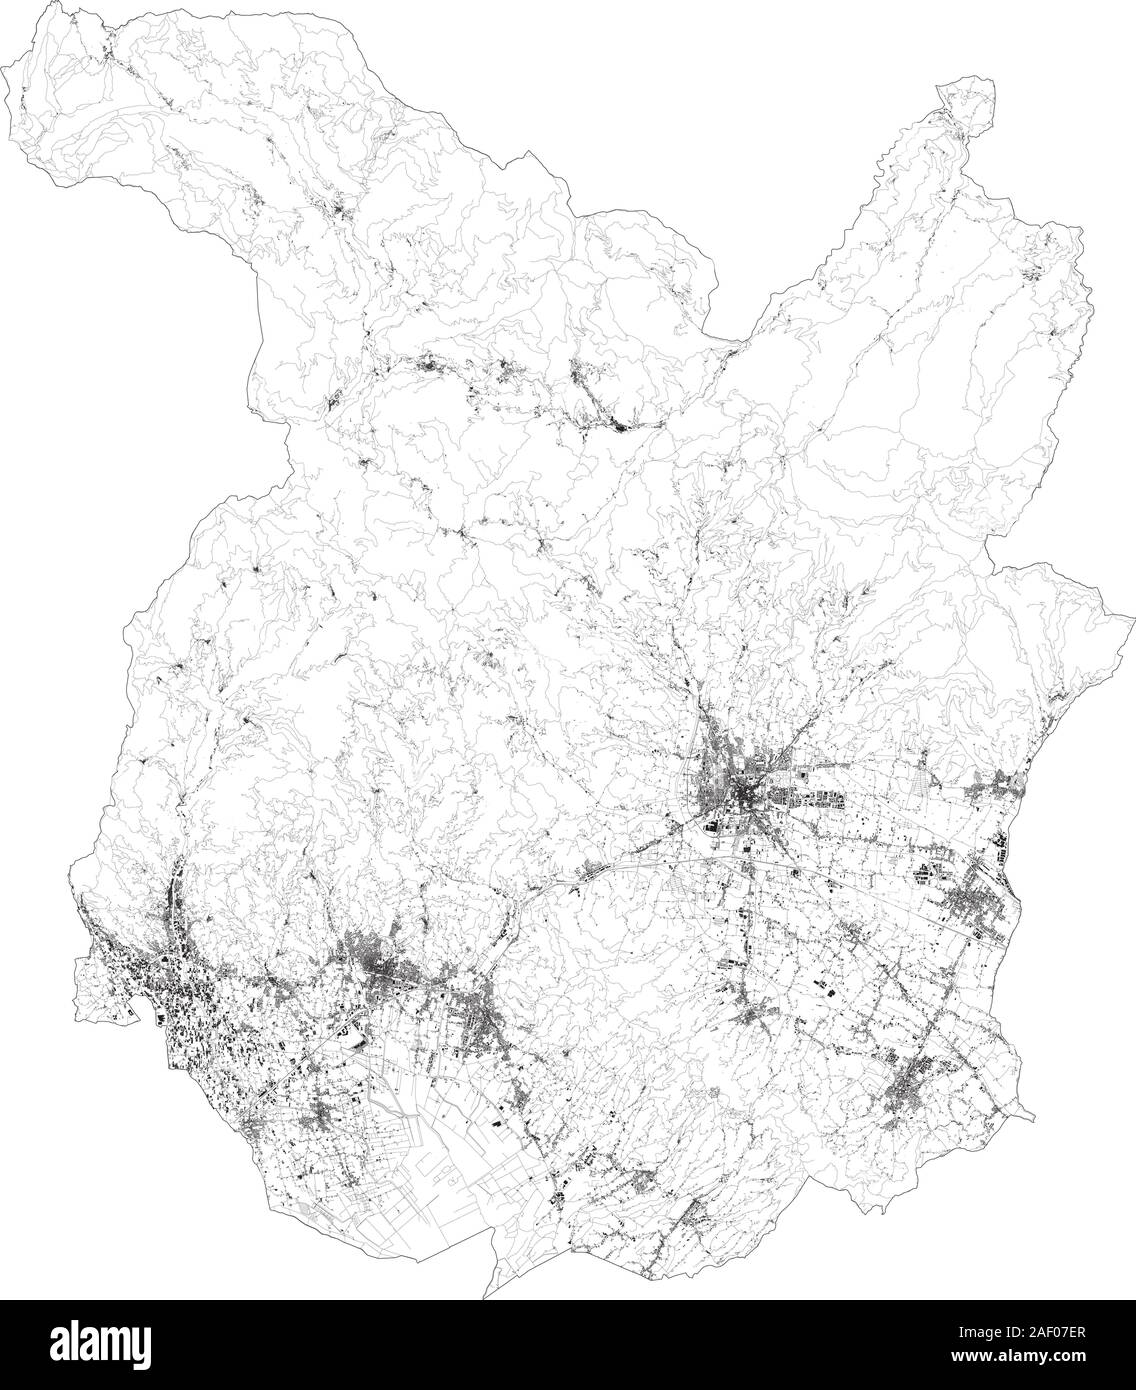 Sat-Karte der Provinz von Pistoia, Städte und Straßen, Gebäude und Straßen der Umgebung. Toskana, Italien. Karte Straßen, Ringstraßen Stock Vektor